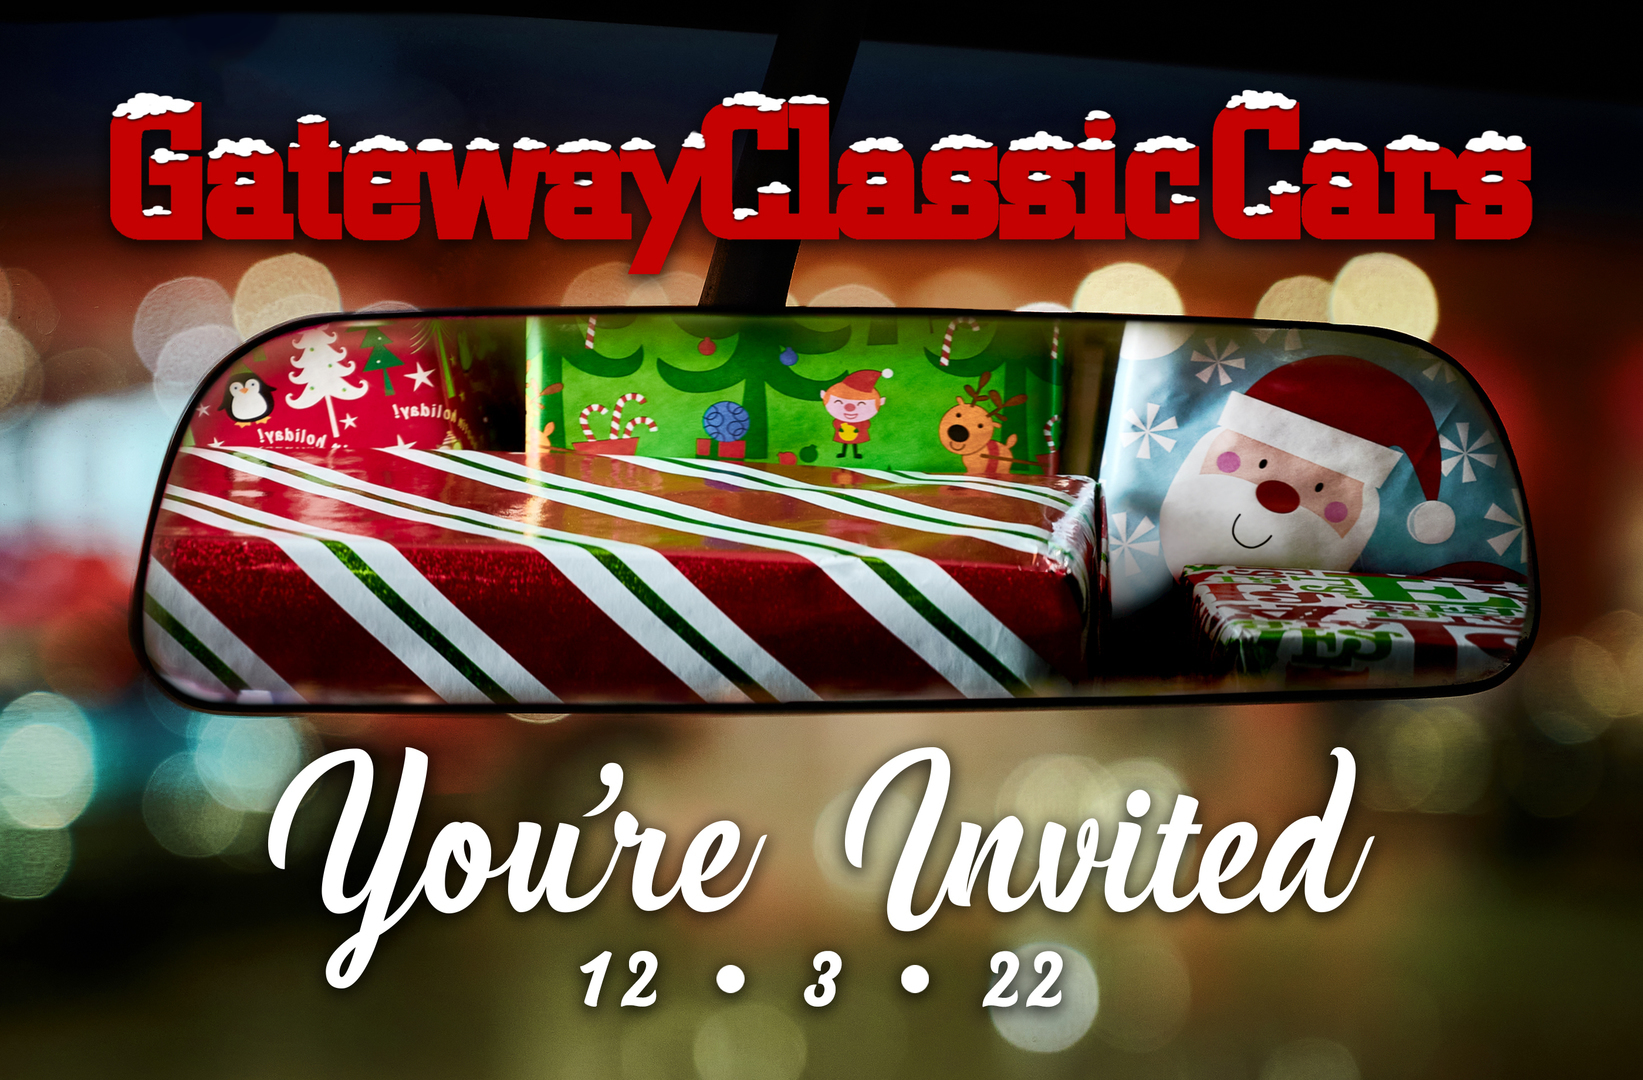 Gateway Classic Cars of Milwaukee - Holiday Party, Kenosha, Wisconsin, United States